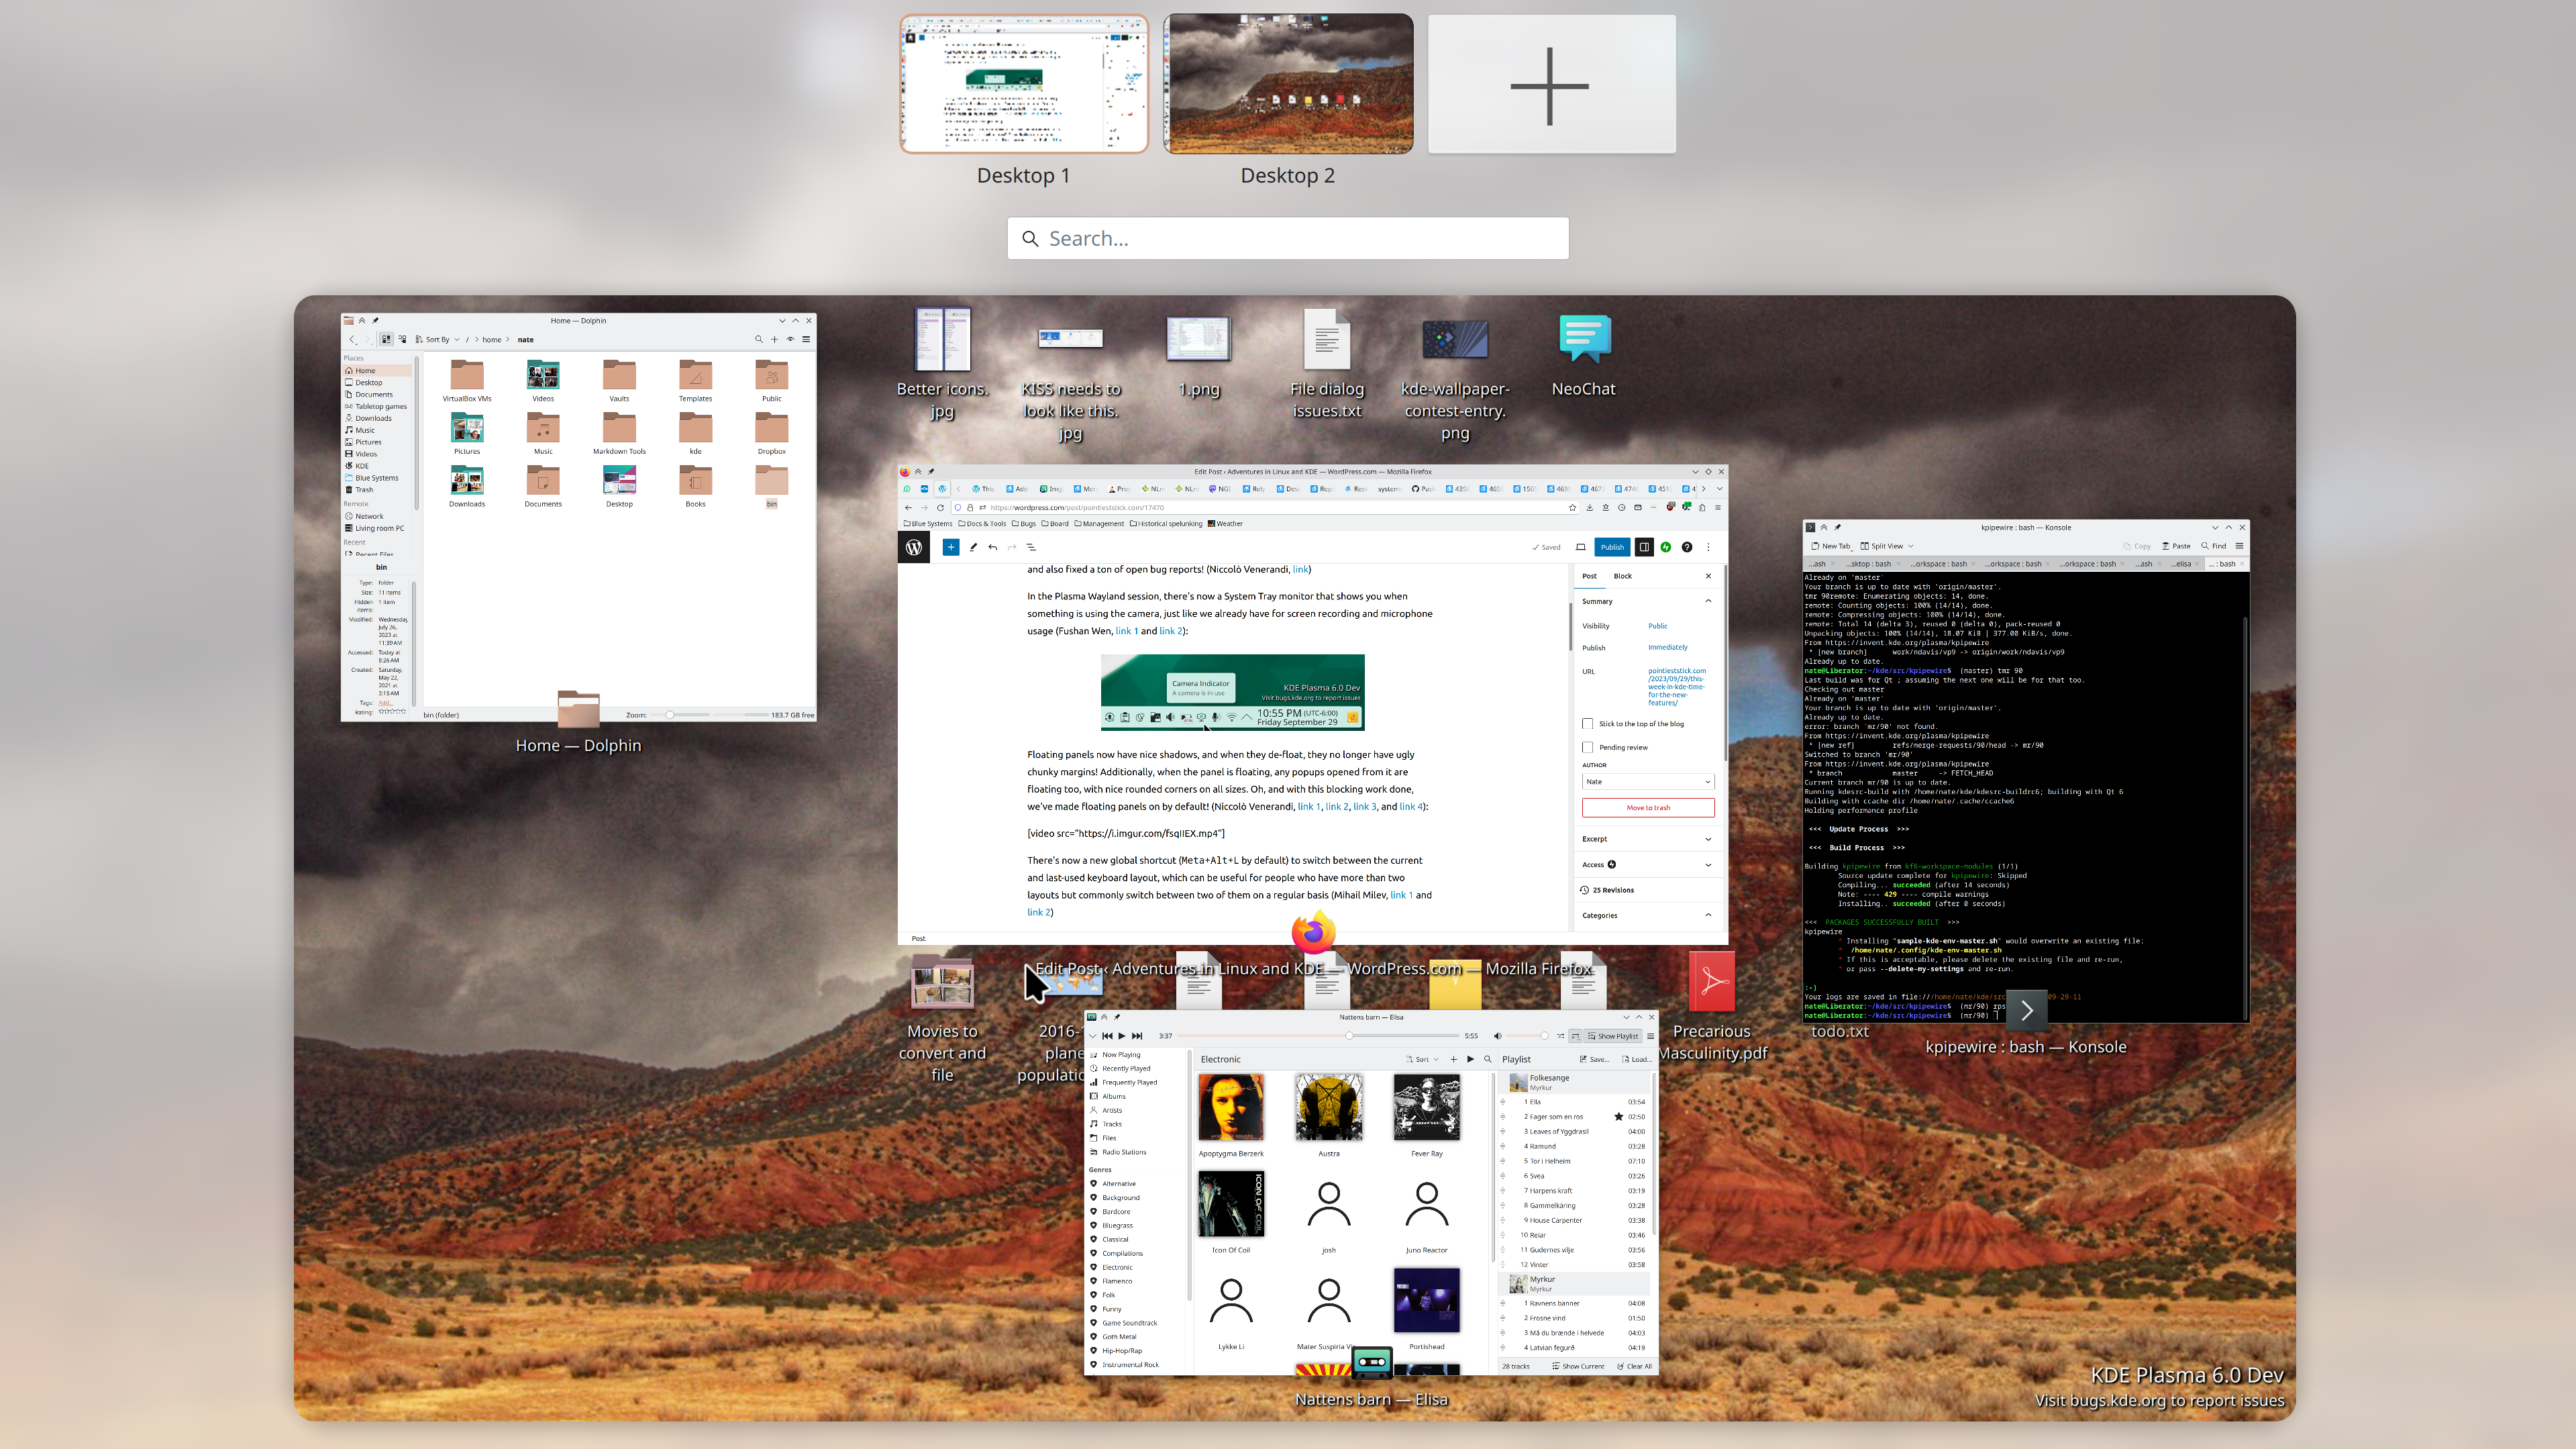 Esta semana em KDE: Hora dos novos recursos